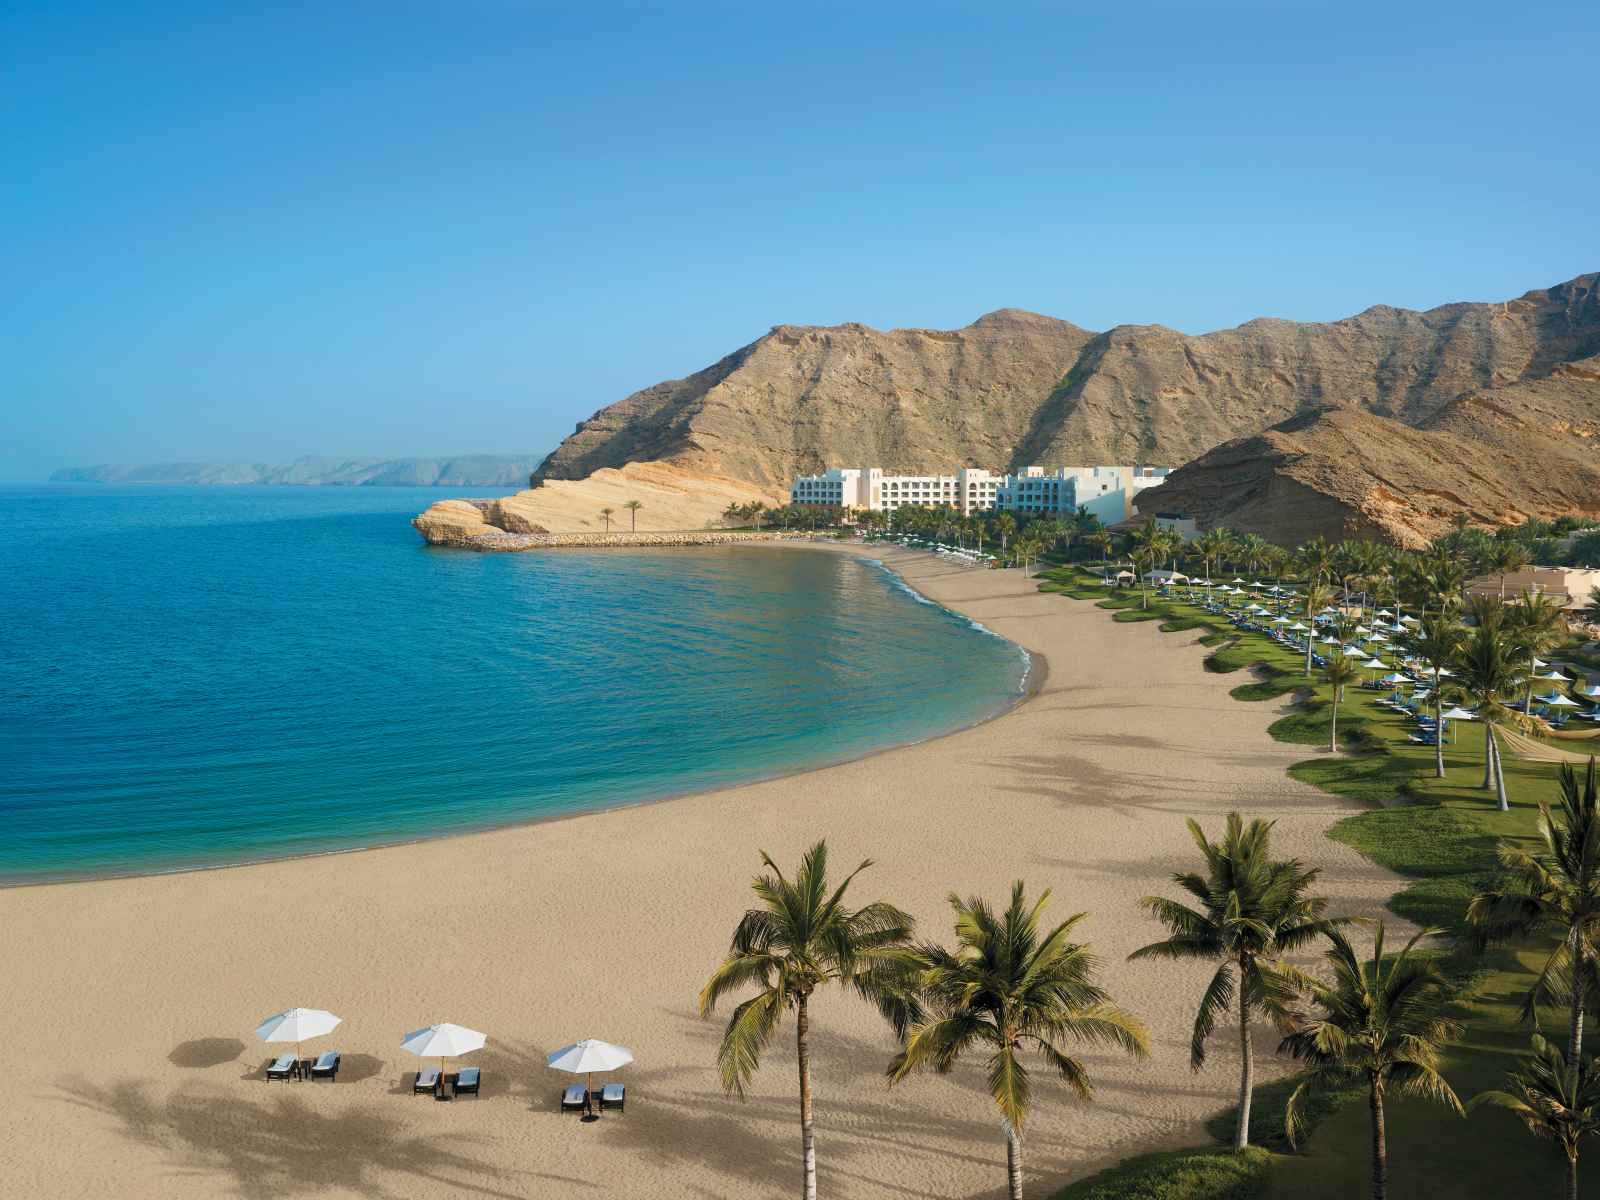 Oman : Al Waha at Shangri-La's Barr Al Jissah Resort & Spa